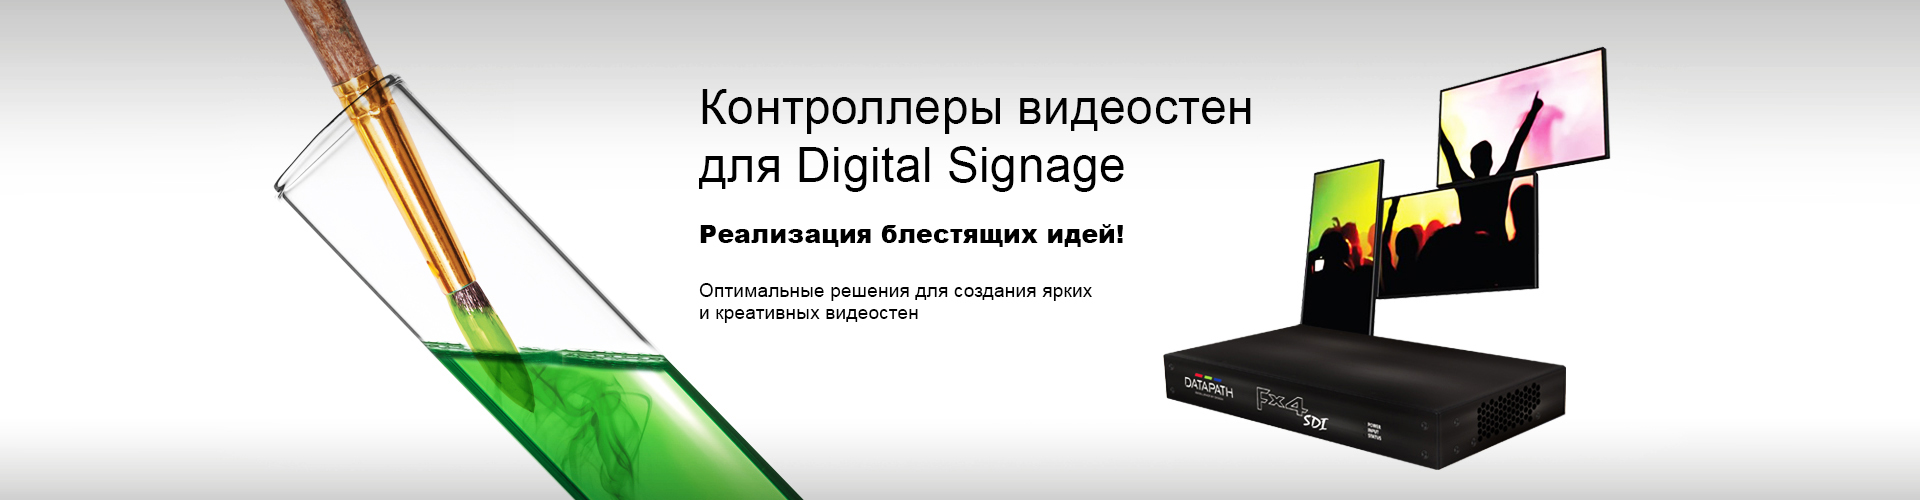 Контроллеры видеостен Hx4 и Fx4 для Digital Signage